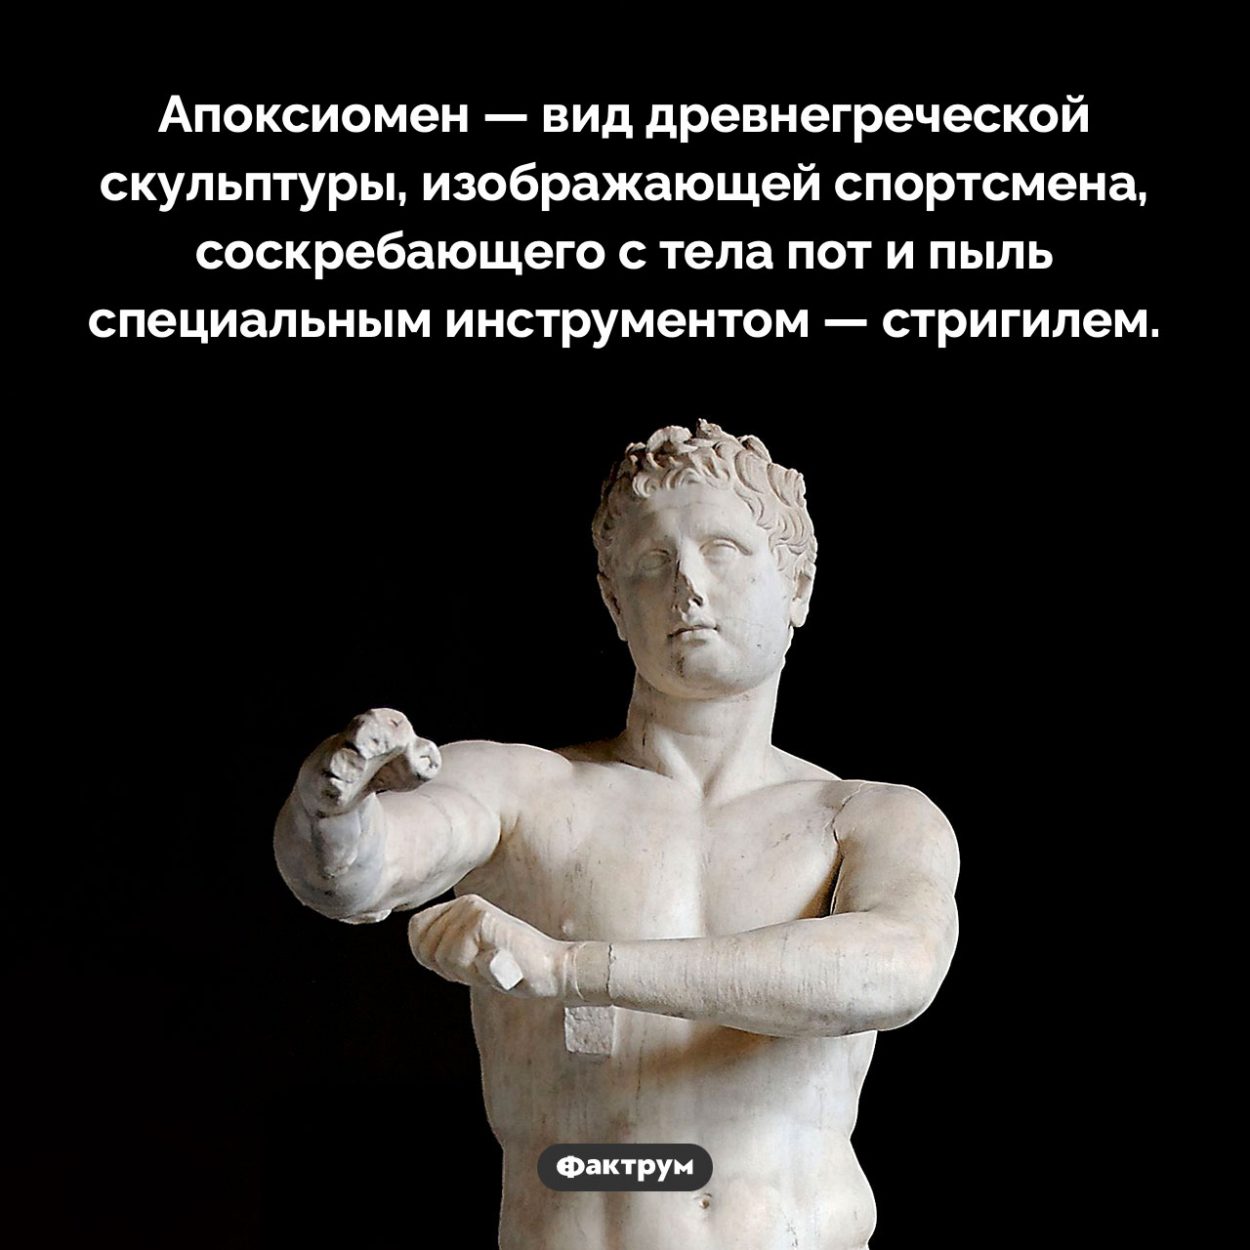 Что такое «апоксиомен». Апоксиомен — вид древнегреческой скульптуры, изображающей спортсмена, соскребающего с тела пот и пыль специальным инструментом — стригилем.